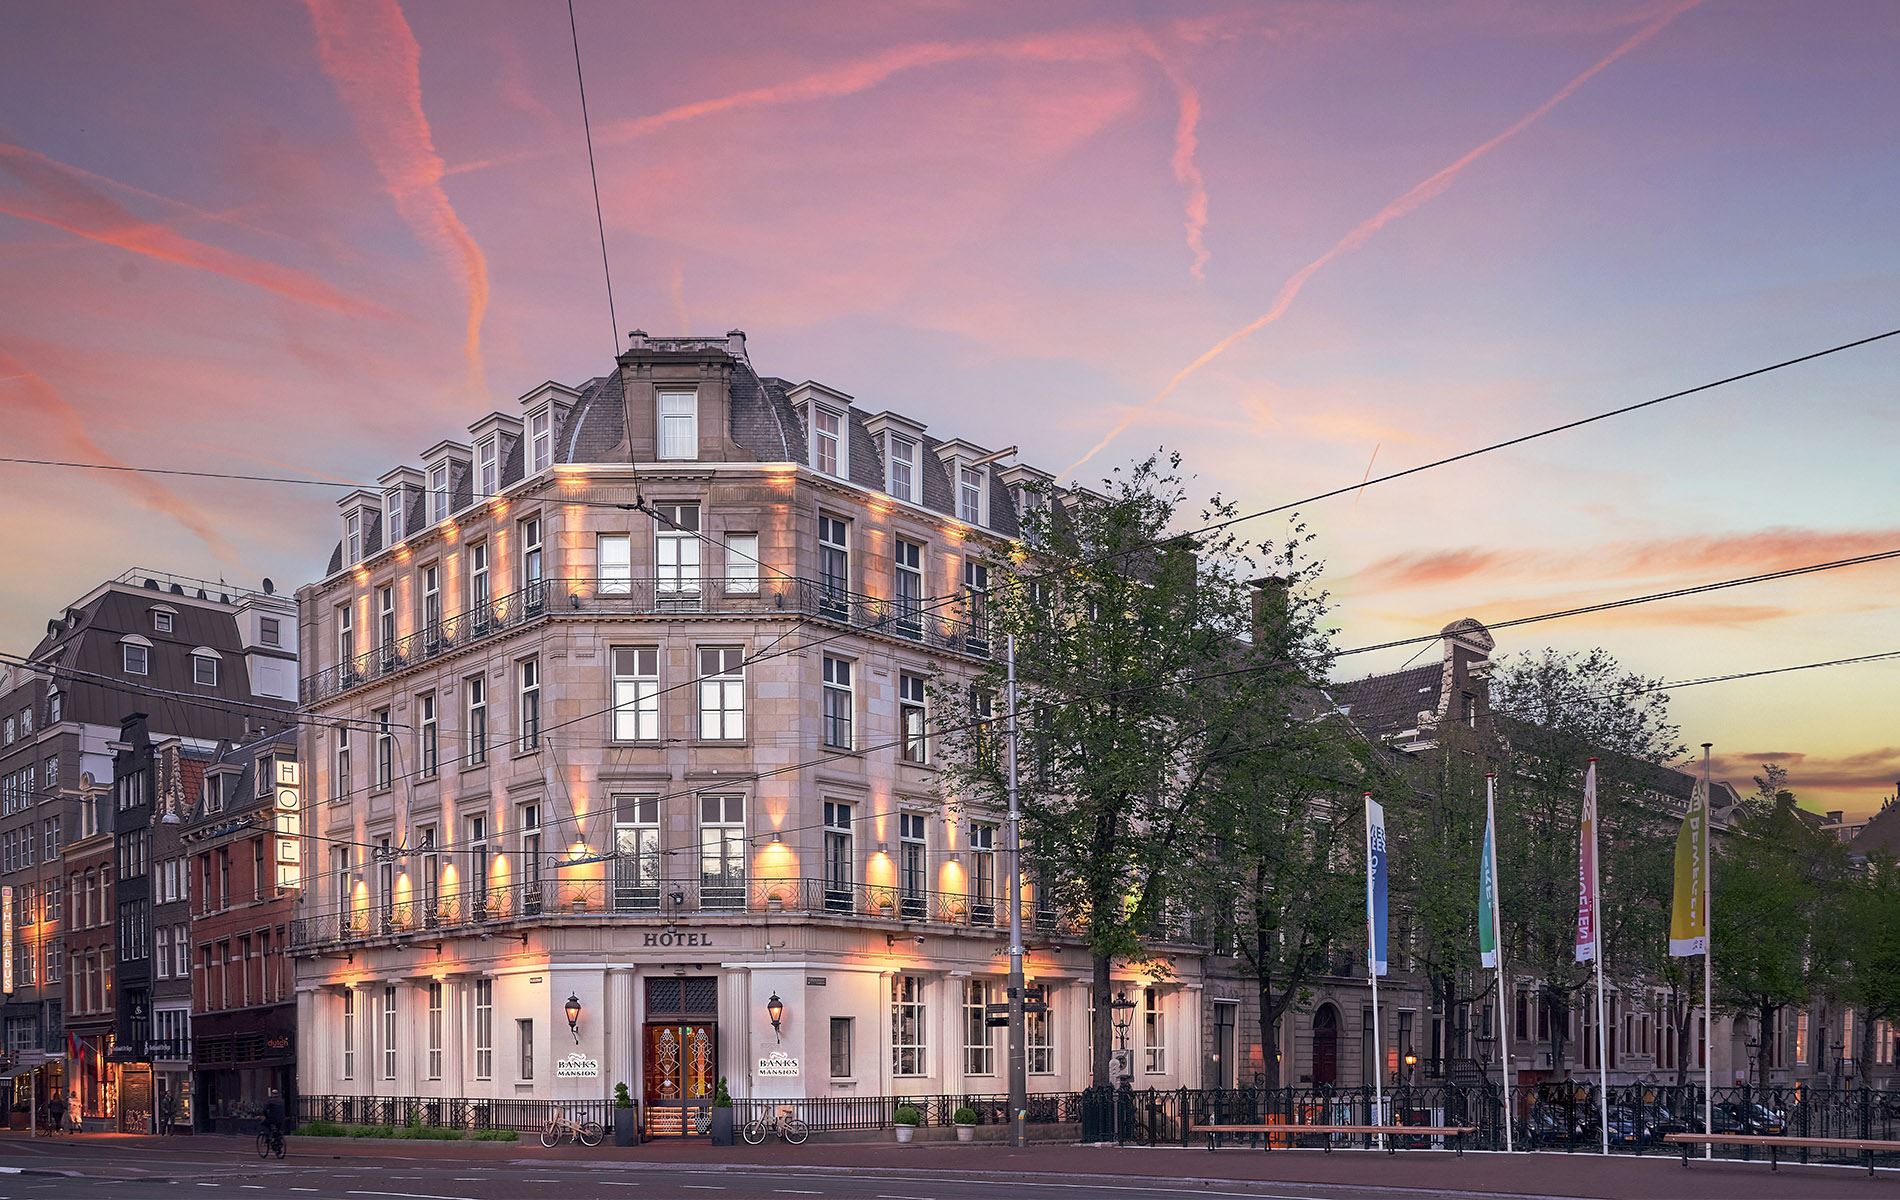 banks-mansion-hotel-amsterdam-building-v2